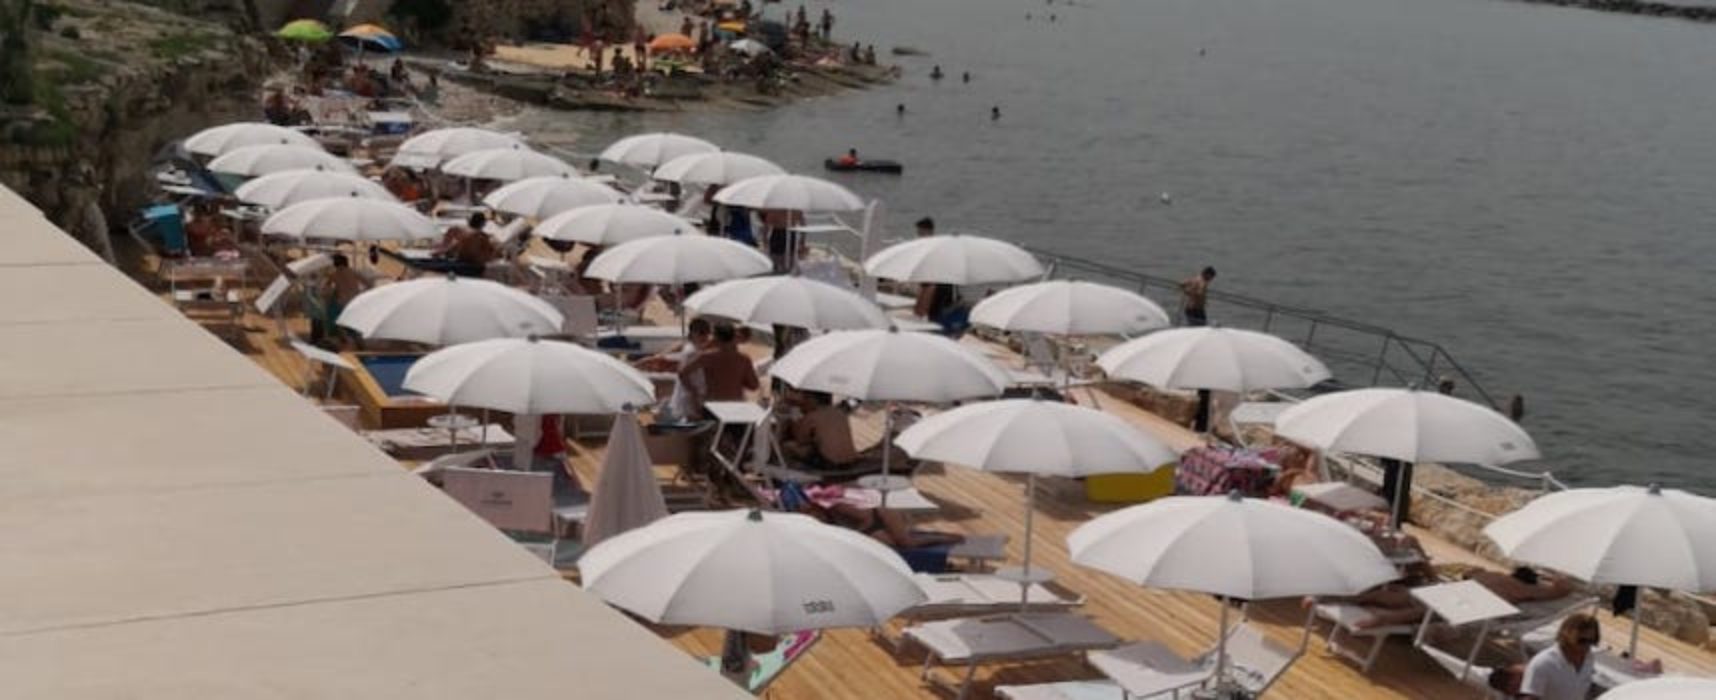 La Salata, Napoletano: “Superficie occupata da ombrelloni e lettini, evidente violazione bando”